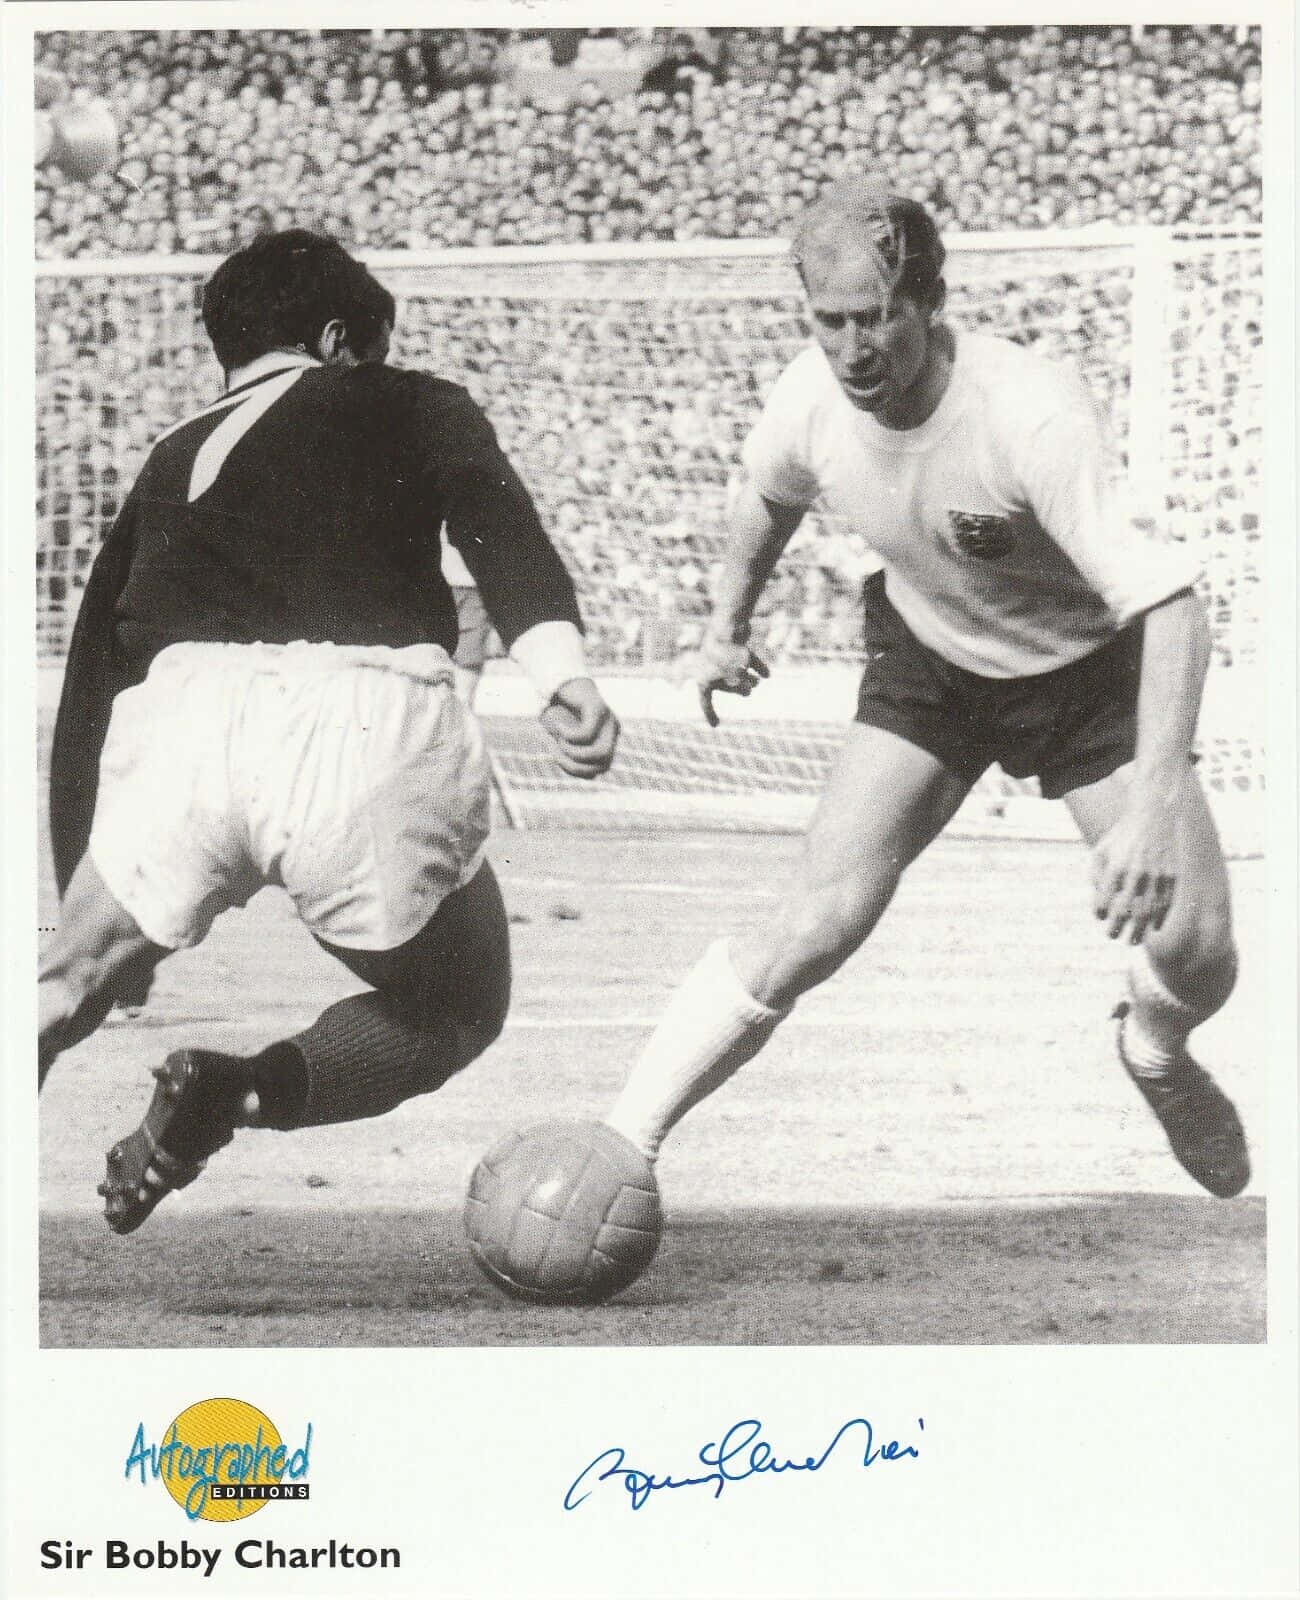 Fotografiaautografata Di Bobby Charlton Della Nazionale Inglese Di Calcio. Sfondo